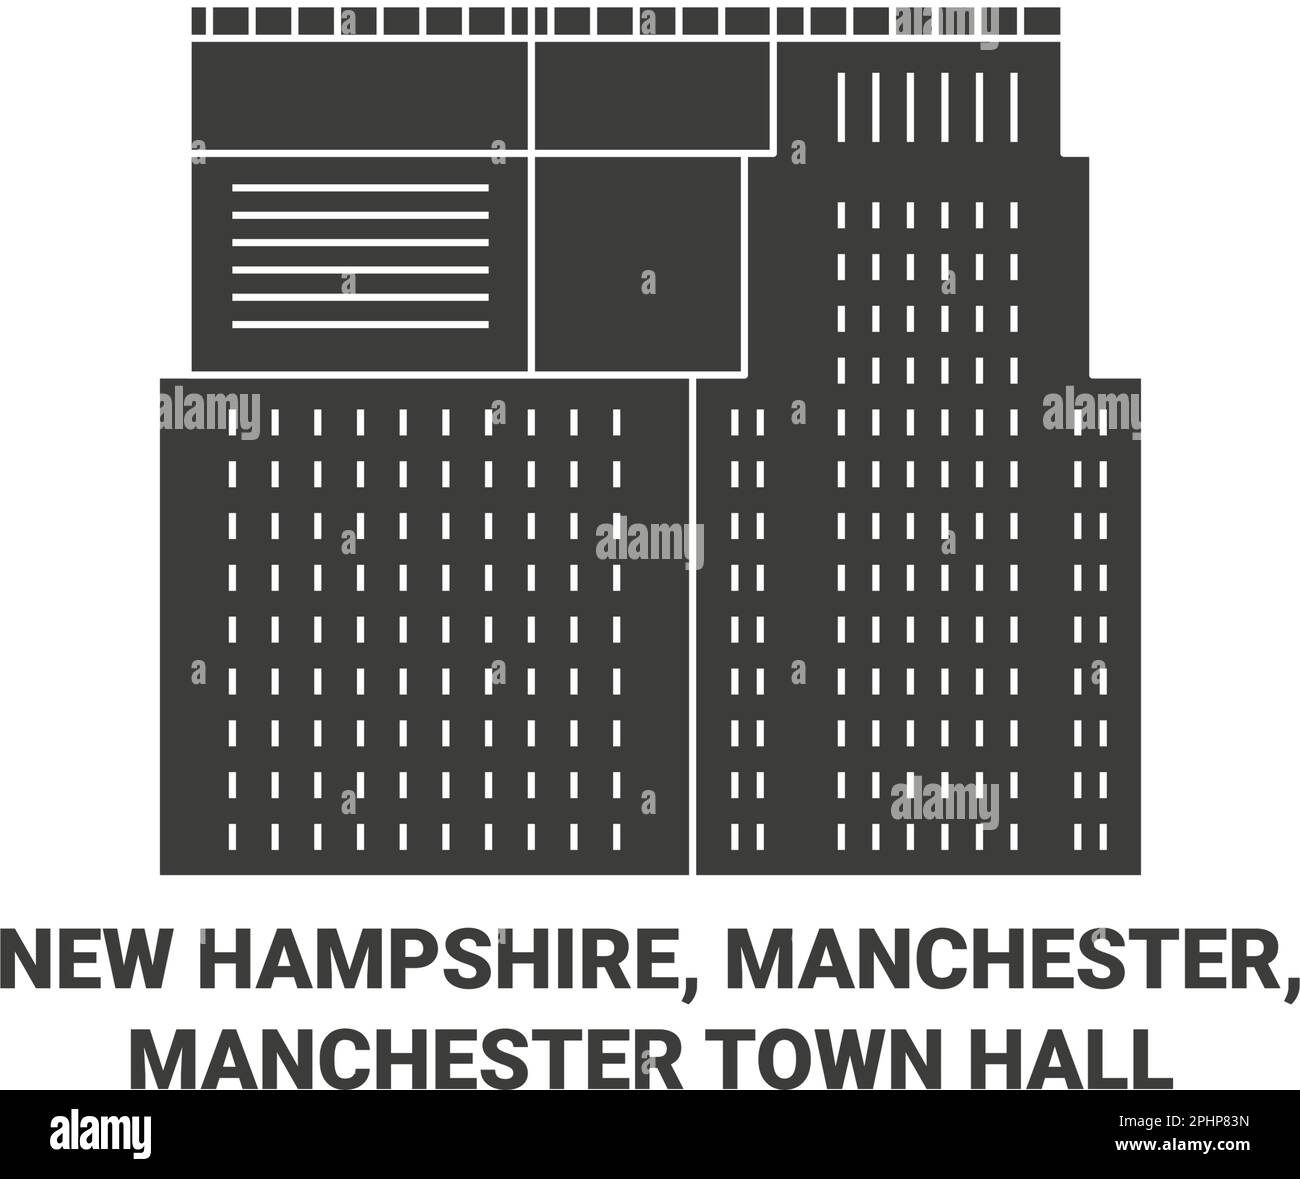 USA, New Hampshire, Manchester, Manchester Town Hall Reise-Wahrzeichen Vektordarstellung Stock Vektor